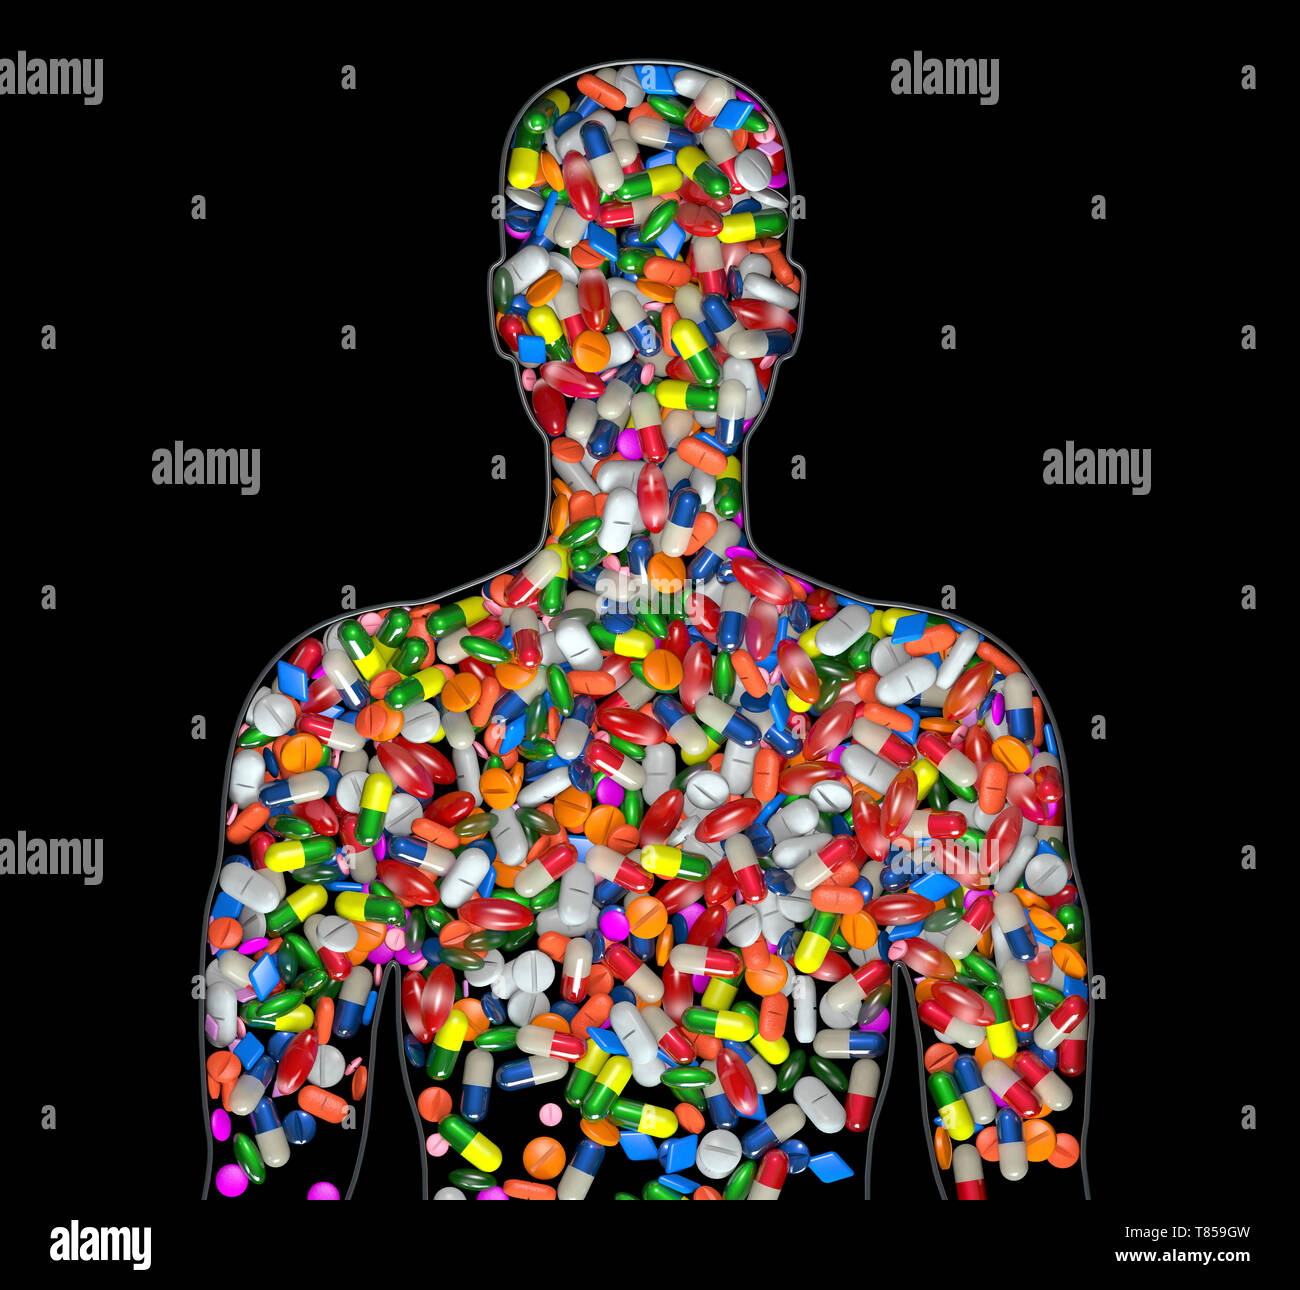 Prescription drug addiction, conceptual illustration Stock Photo